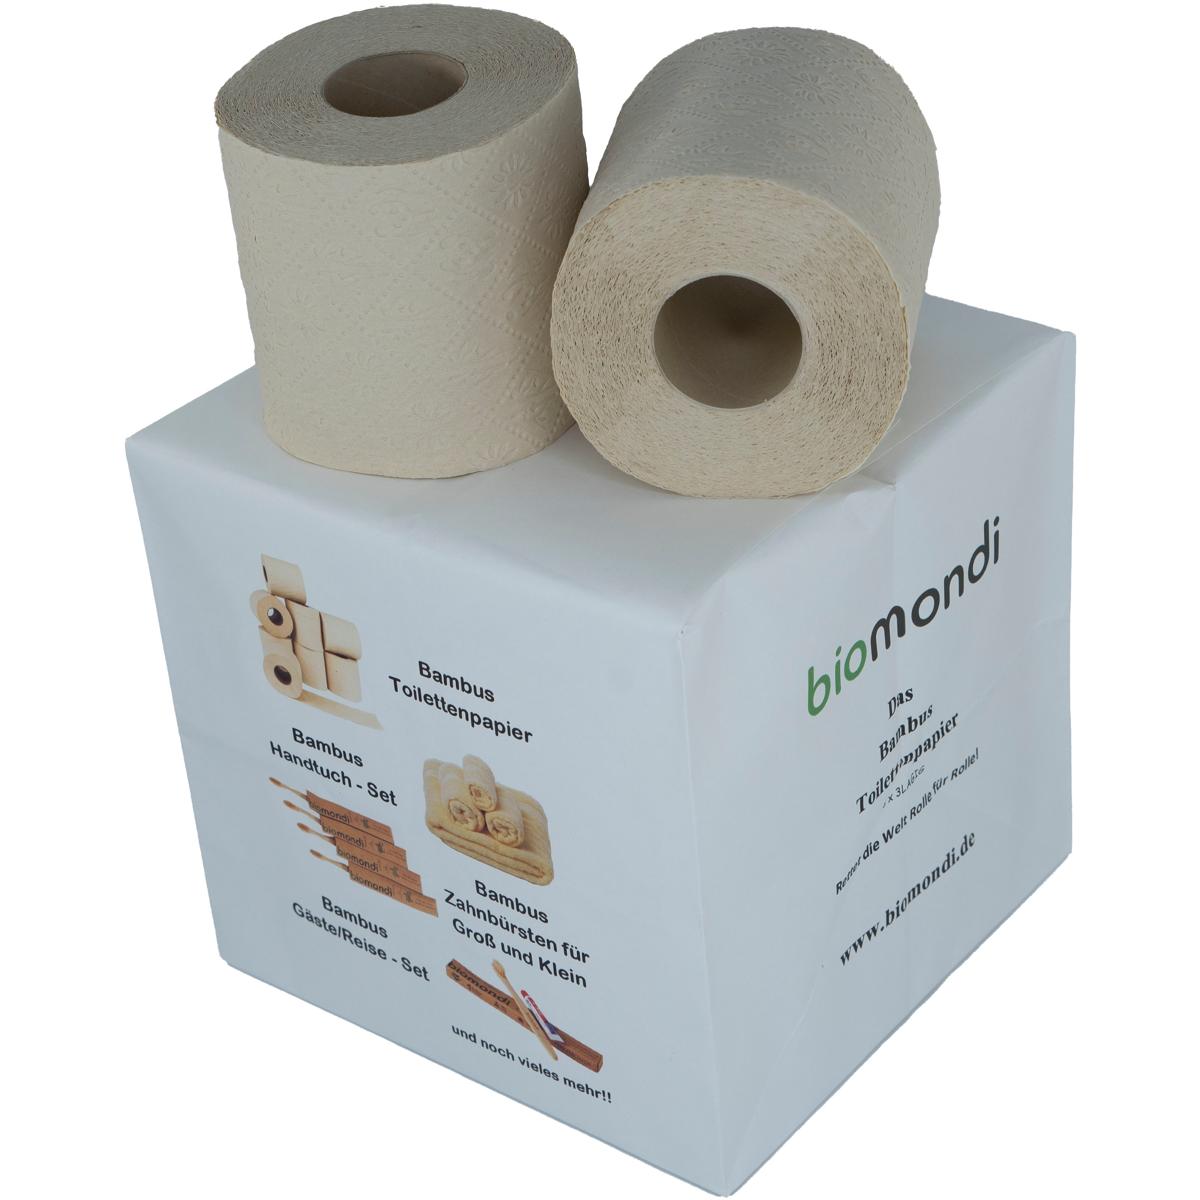 Hygiene WC Bambus Klo Umweltfreundliches Papier Camping Biomondi 